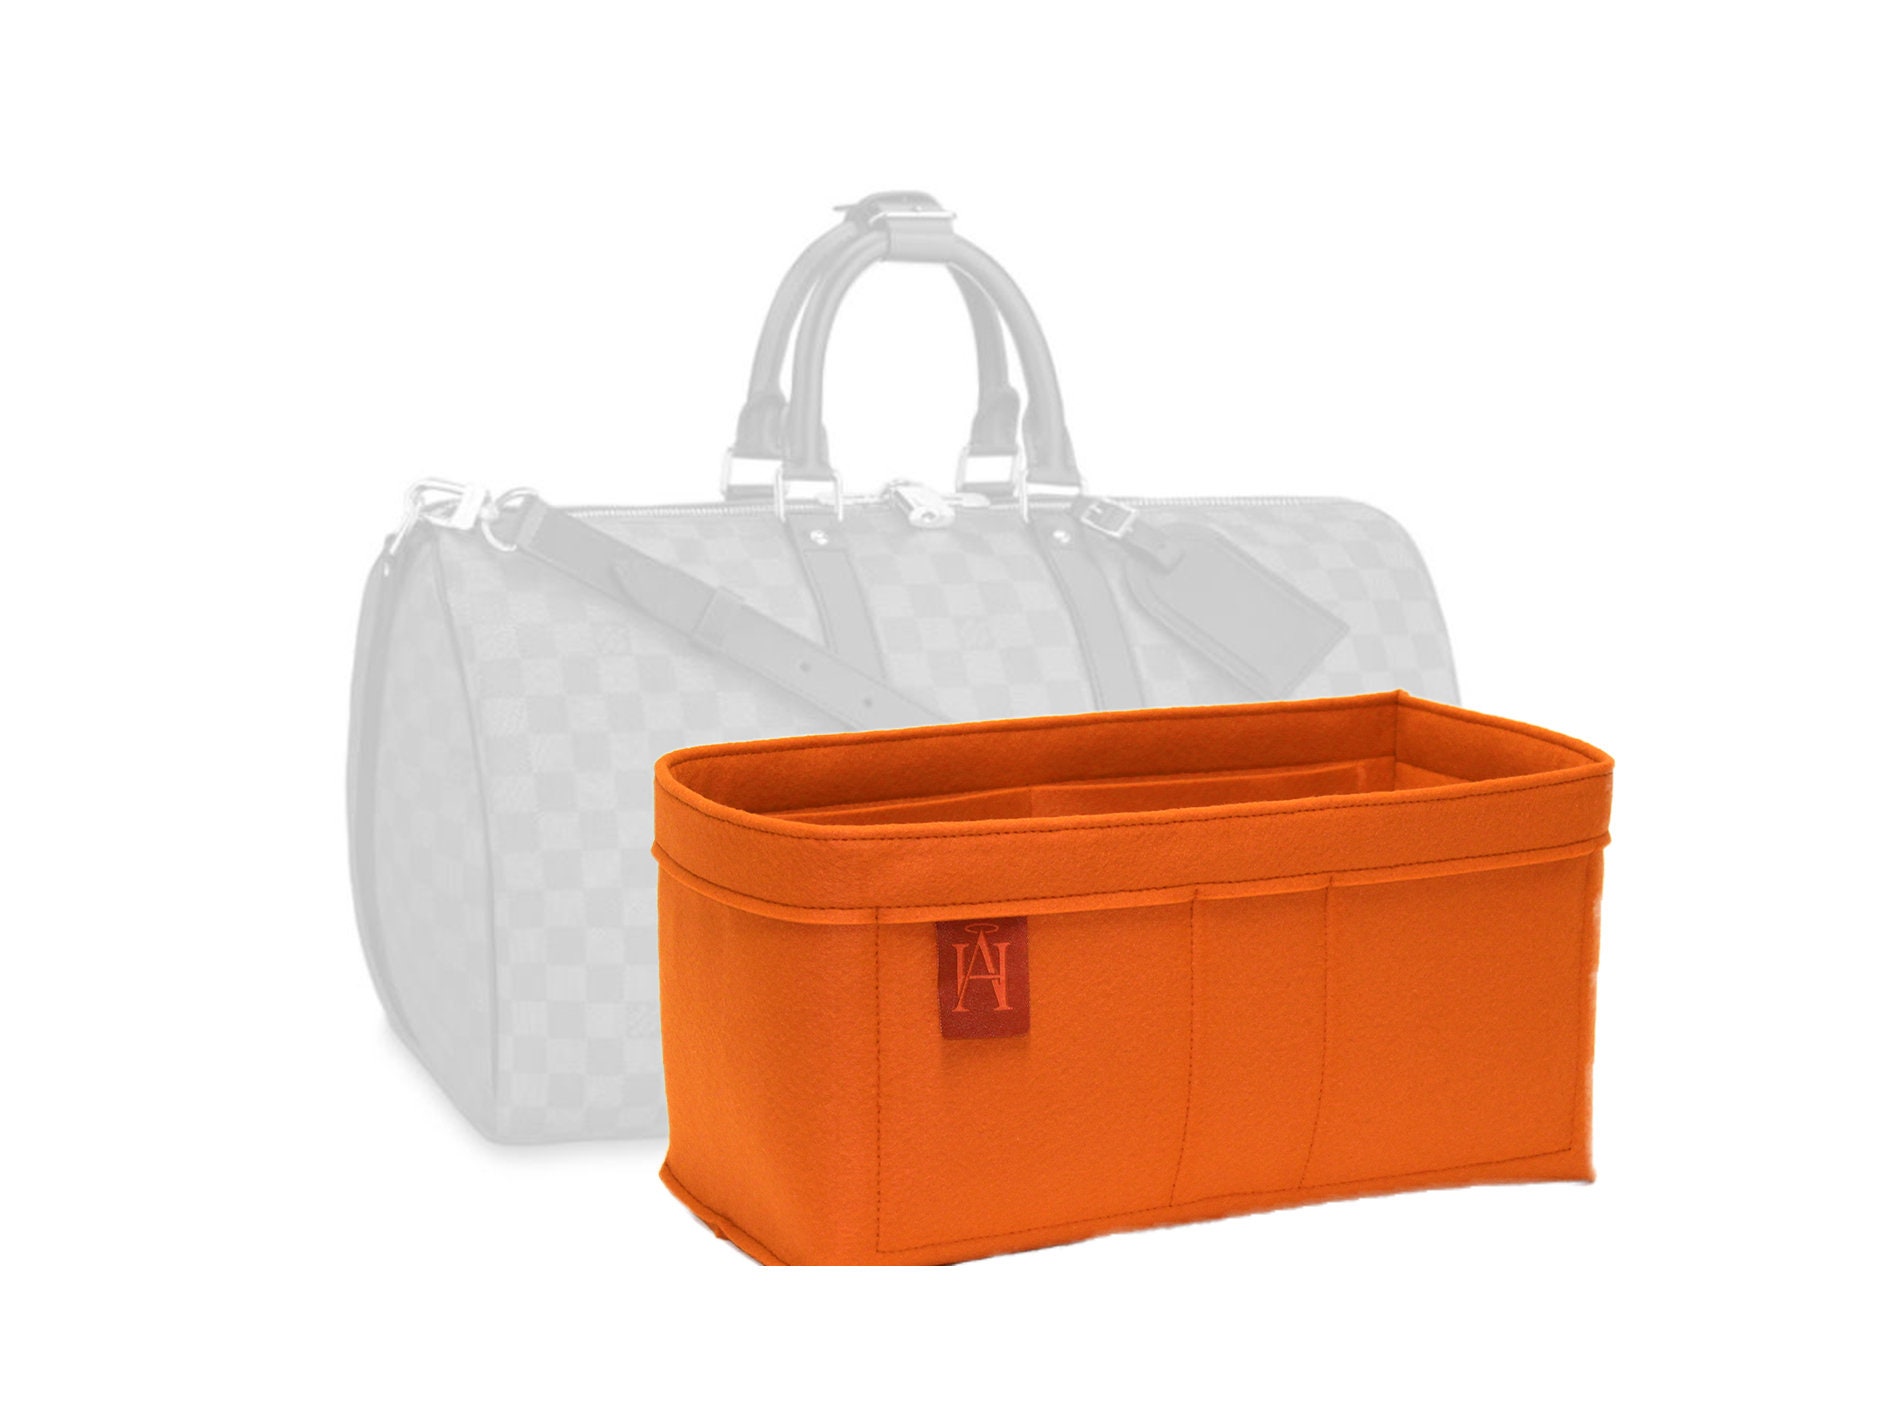 Base Shaper 1/8” Thick Clear Acrylic fits LV Louis Vuitton KEEPALL 55  Duffle Bag, Tote, Handbag, Purse Insert, Plexiglas, Plexiglass Bottom,  Plastic